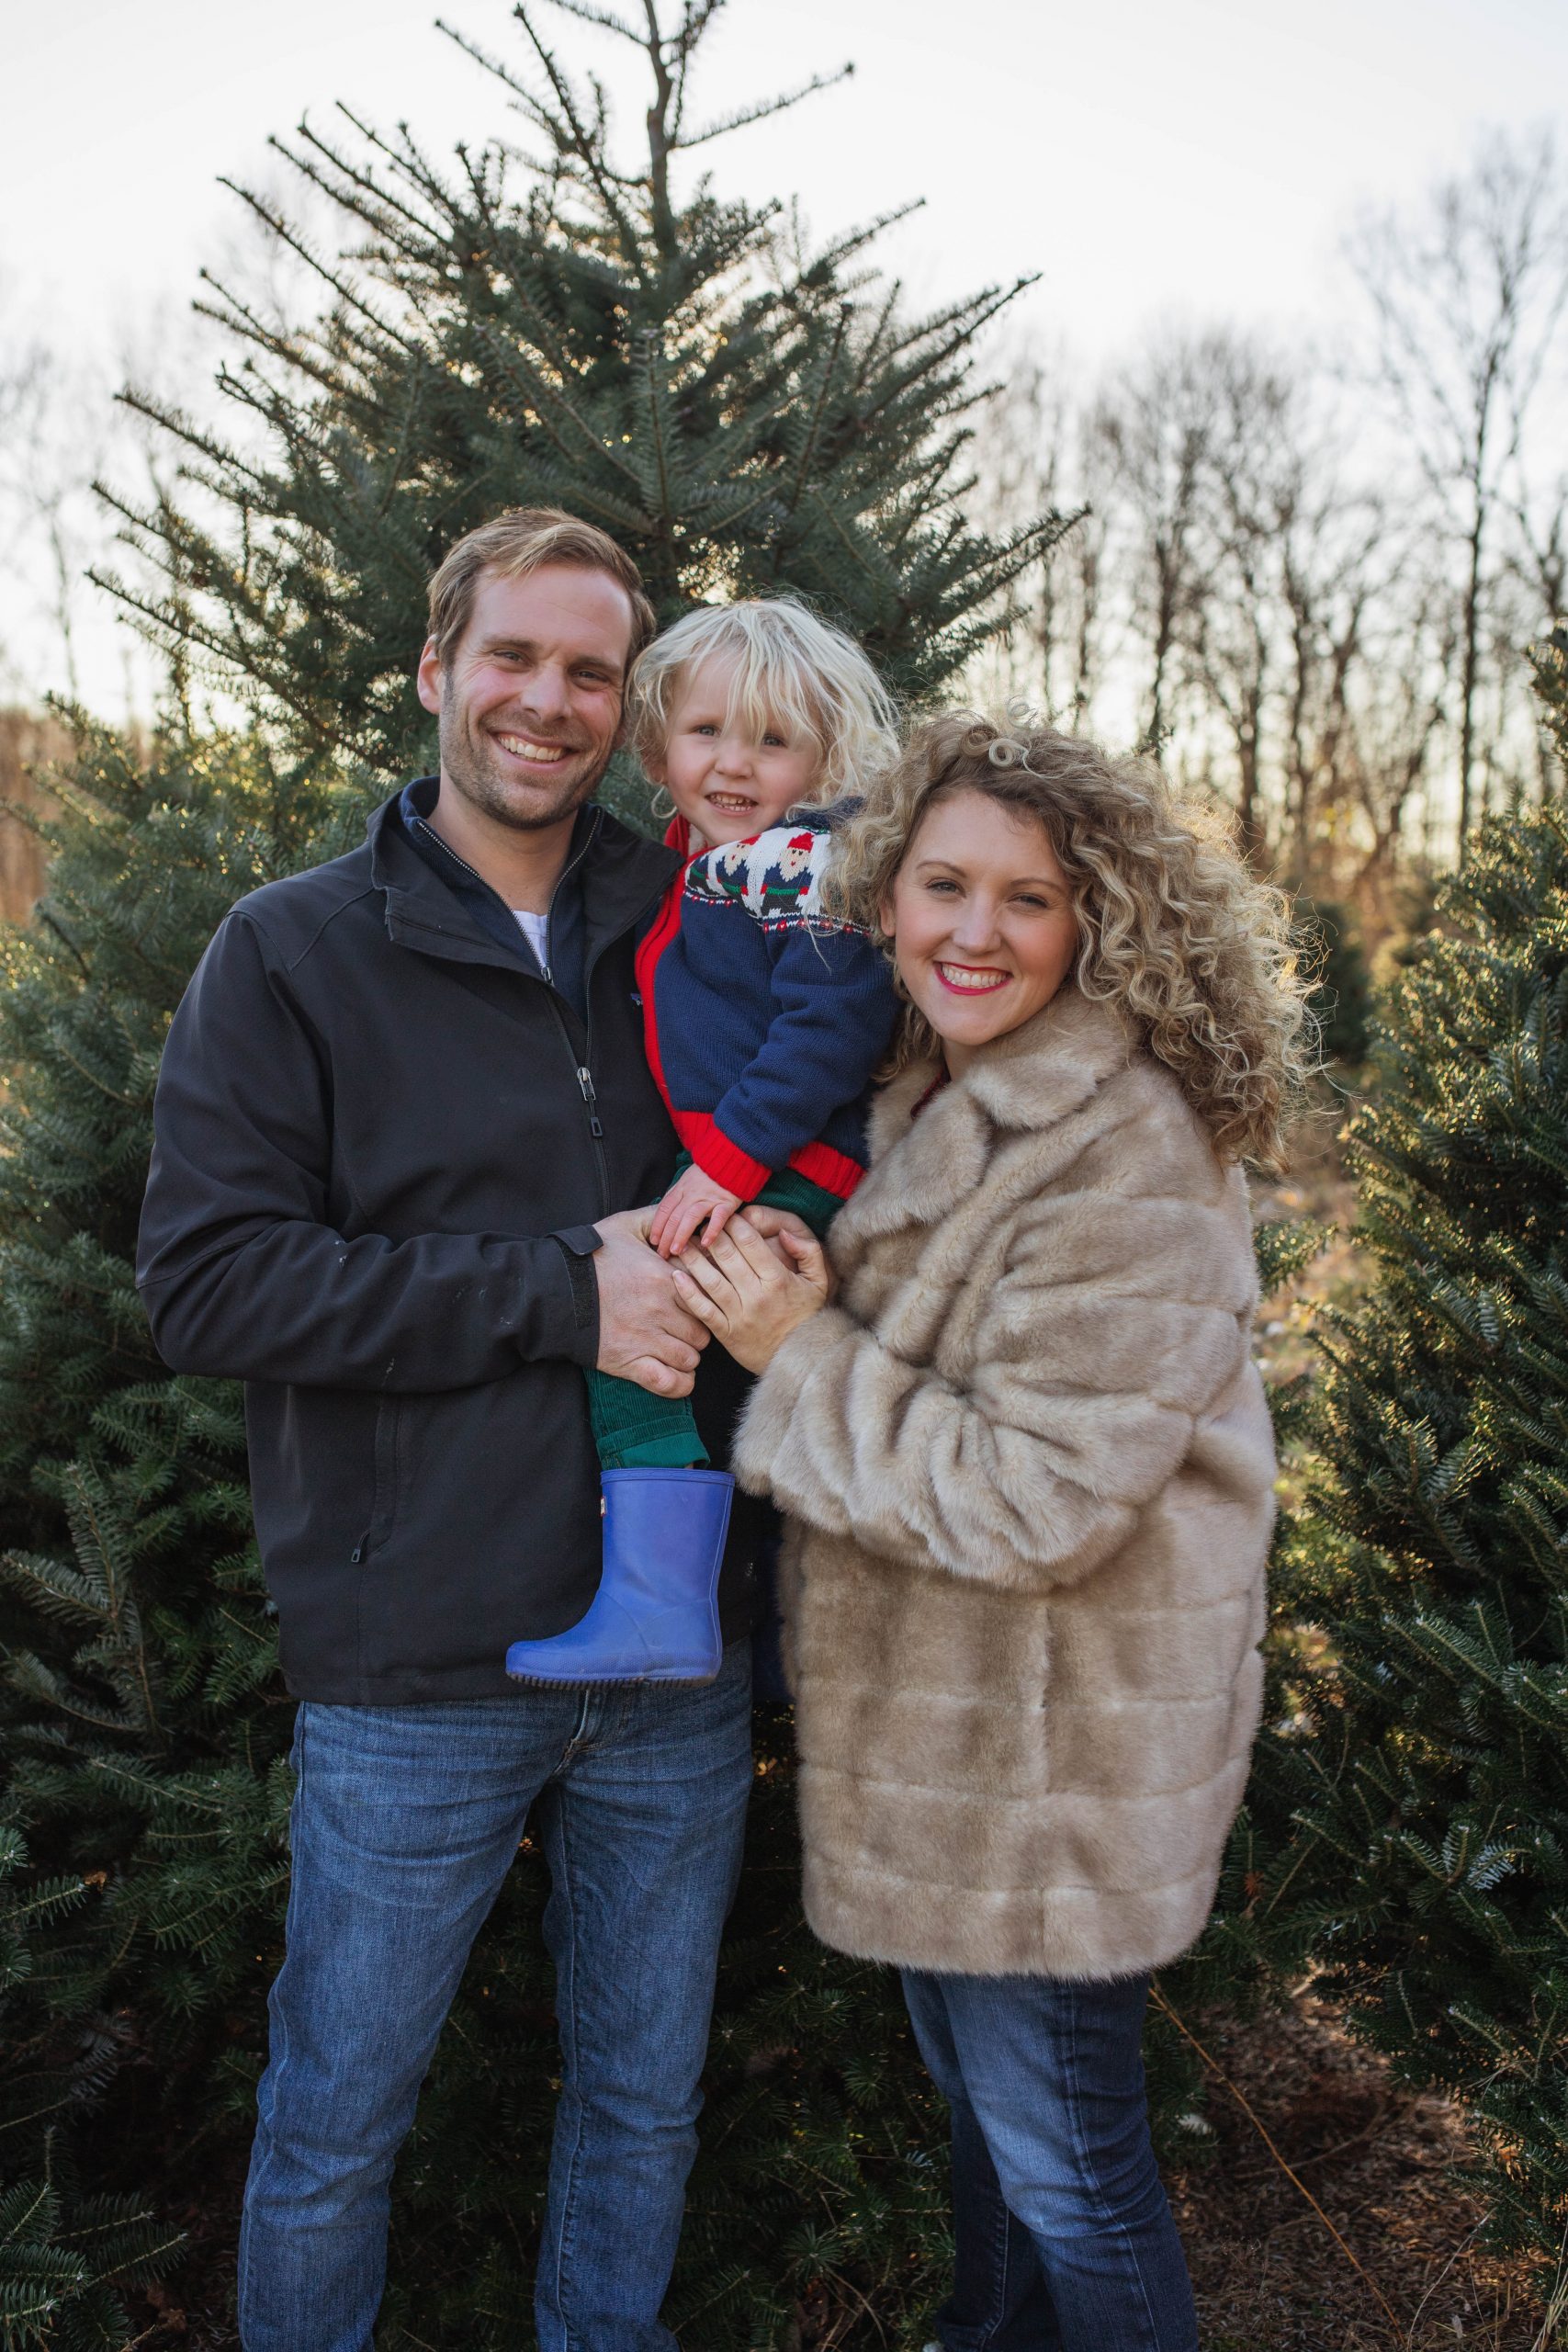 Family Photo at the Tree Farm